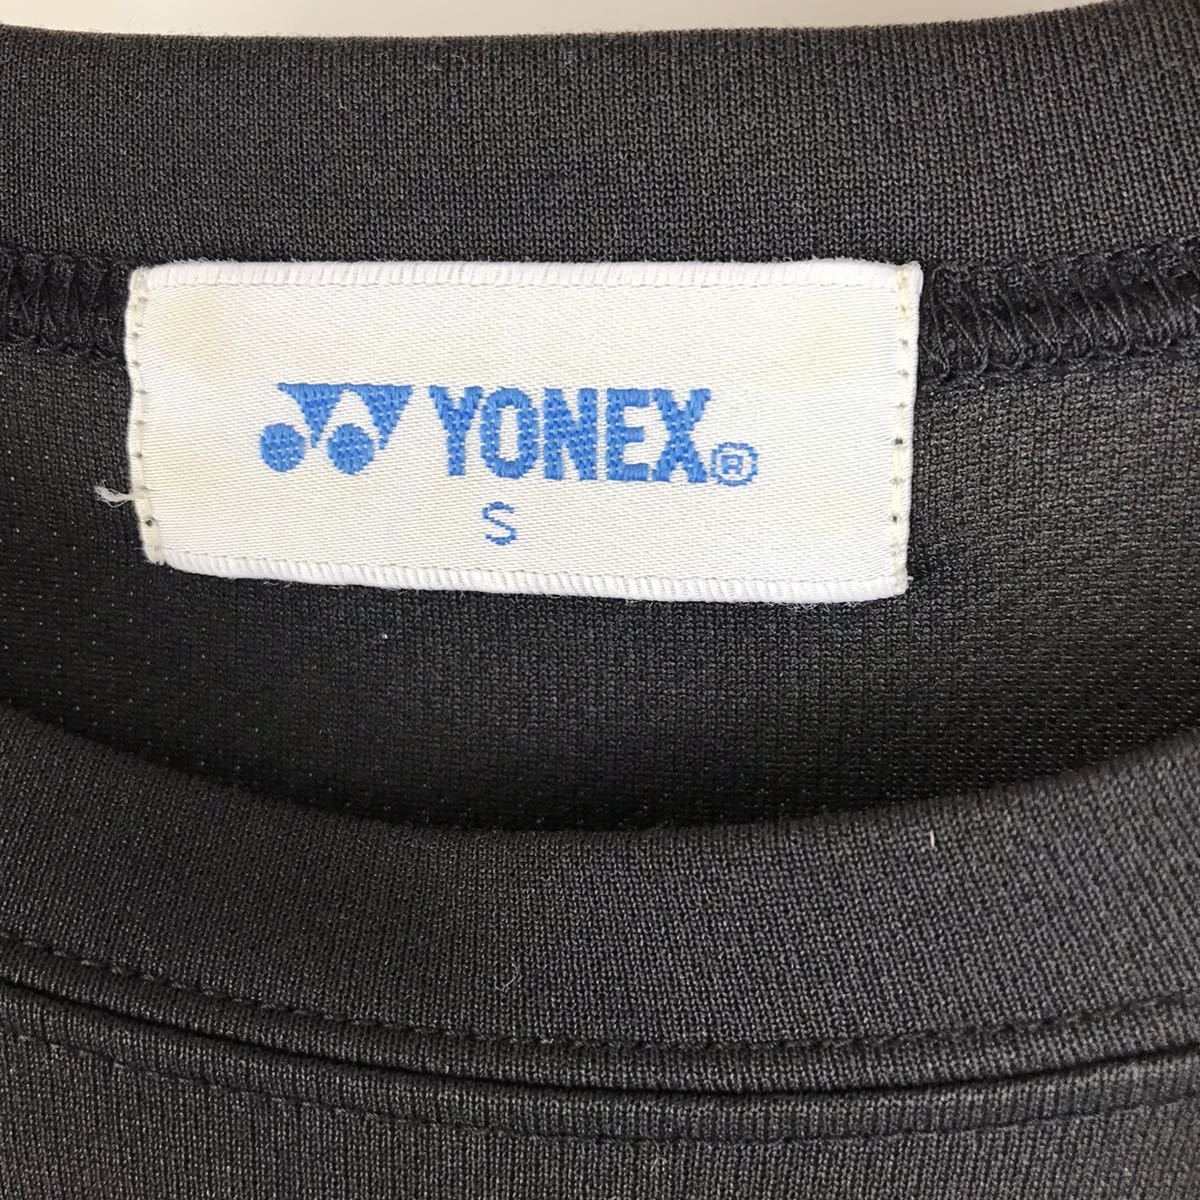 YONEX ヨネックス 半袖 Tシャツ メンズ S 黒 ブラック ロゴプリント SOFT TENNIS ソフトテニス 記念 2013 スポーツ トレーニング ウェア